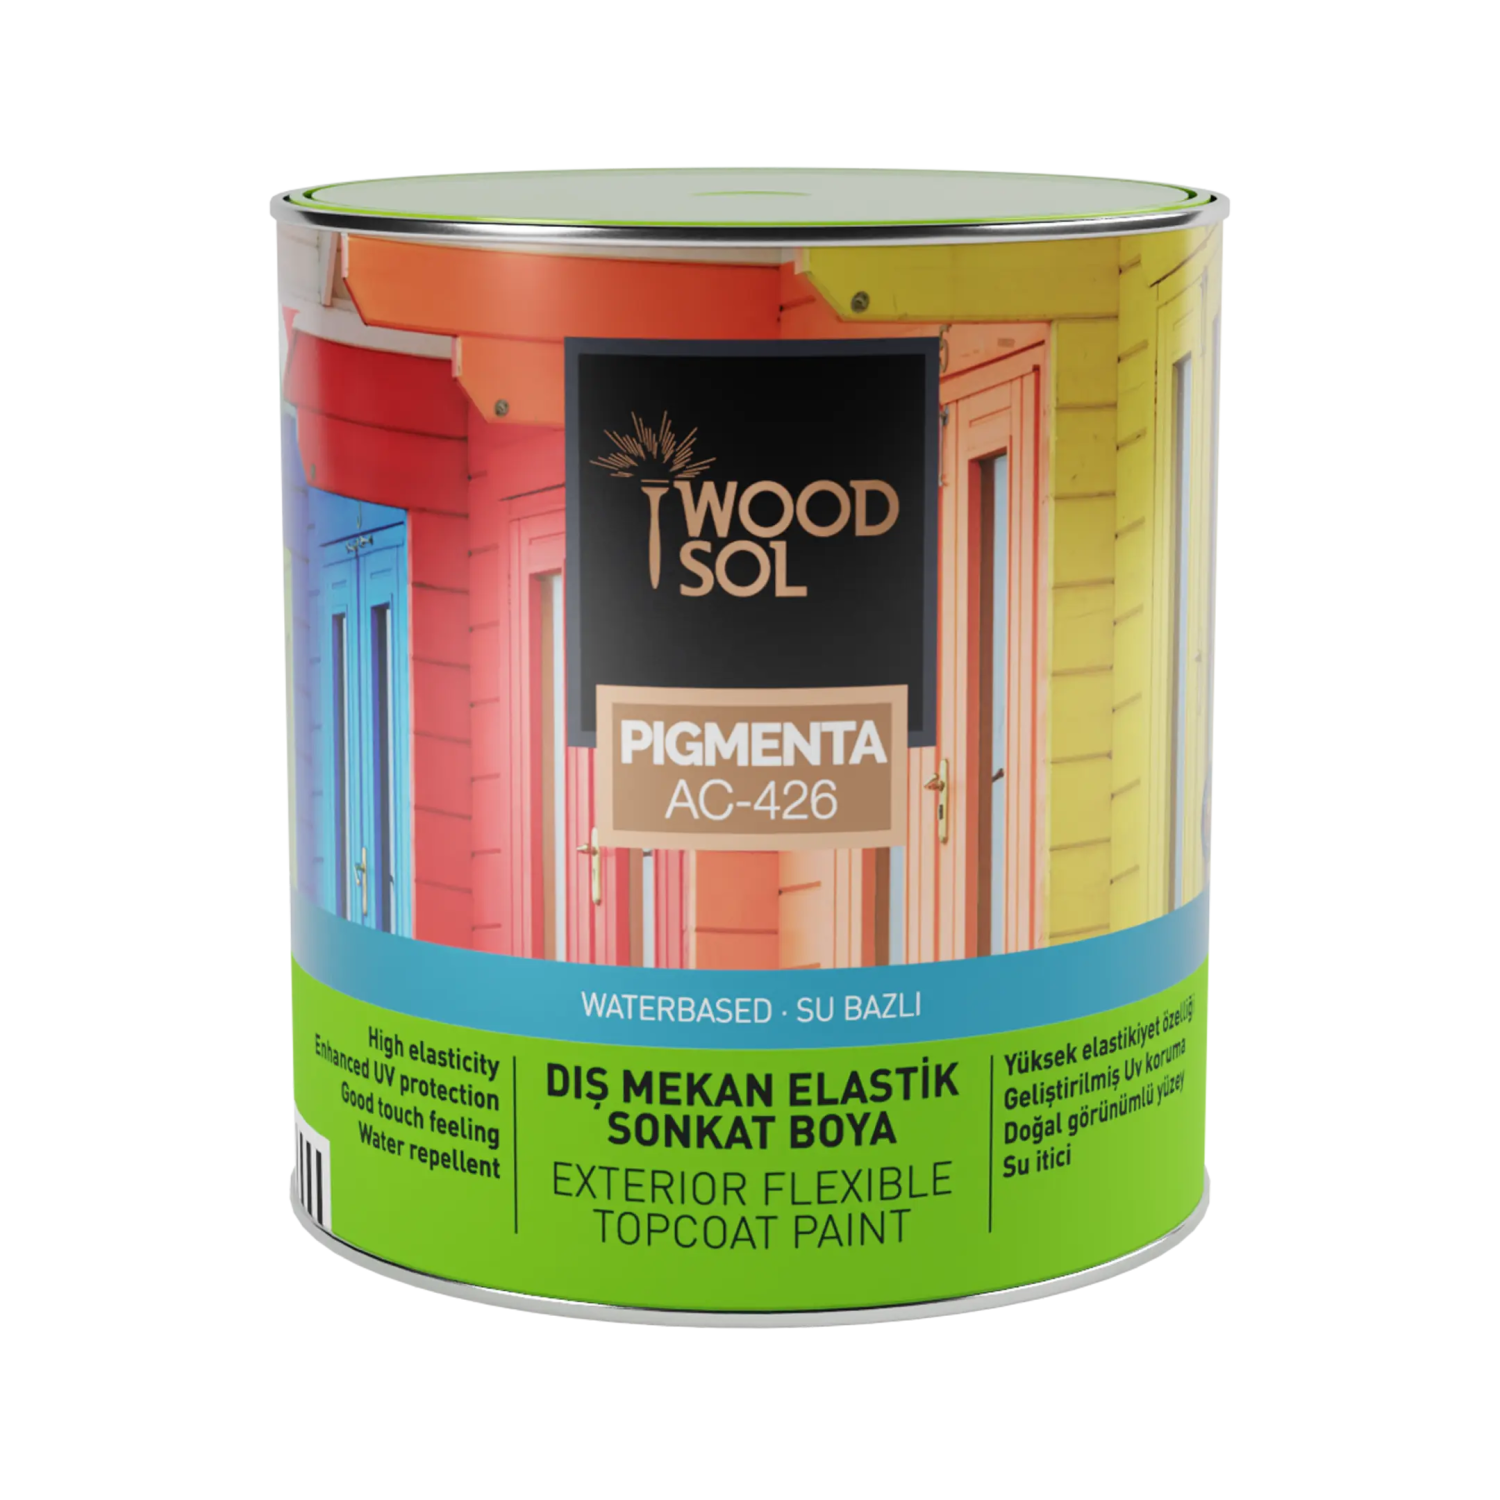 Woodsol Pigmenta Elastik Sonkat Ahşap Boya 2.5 l - 2